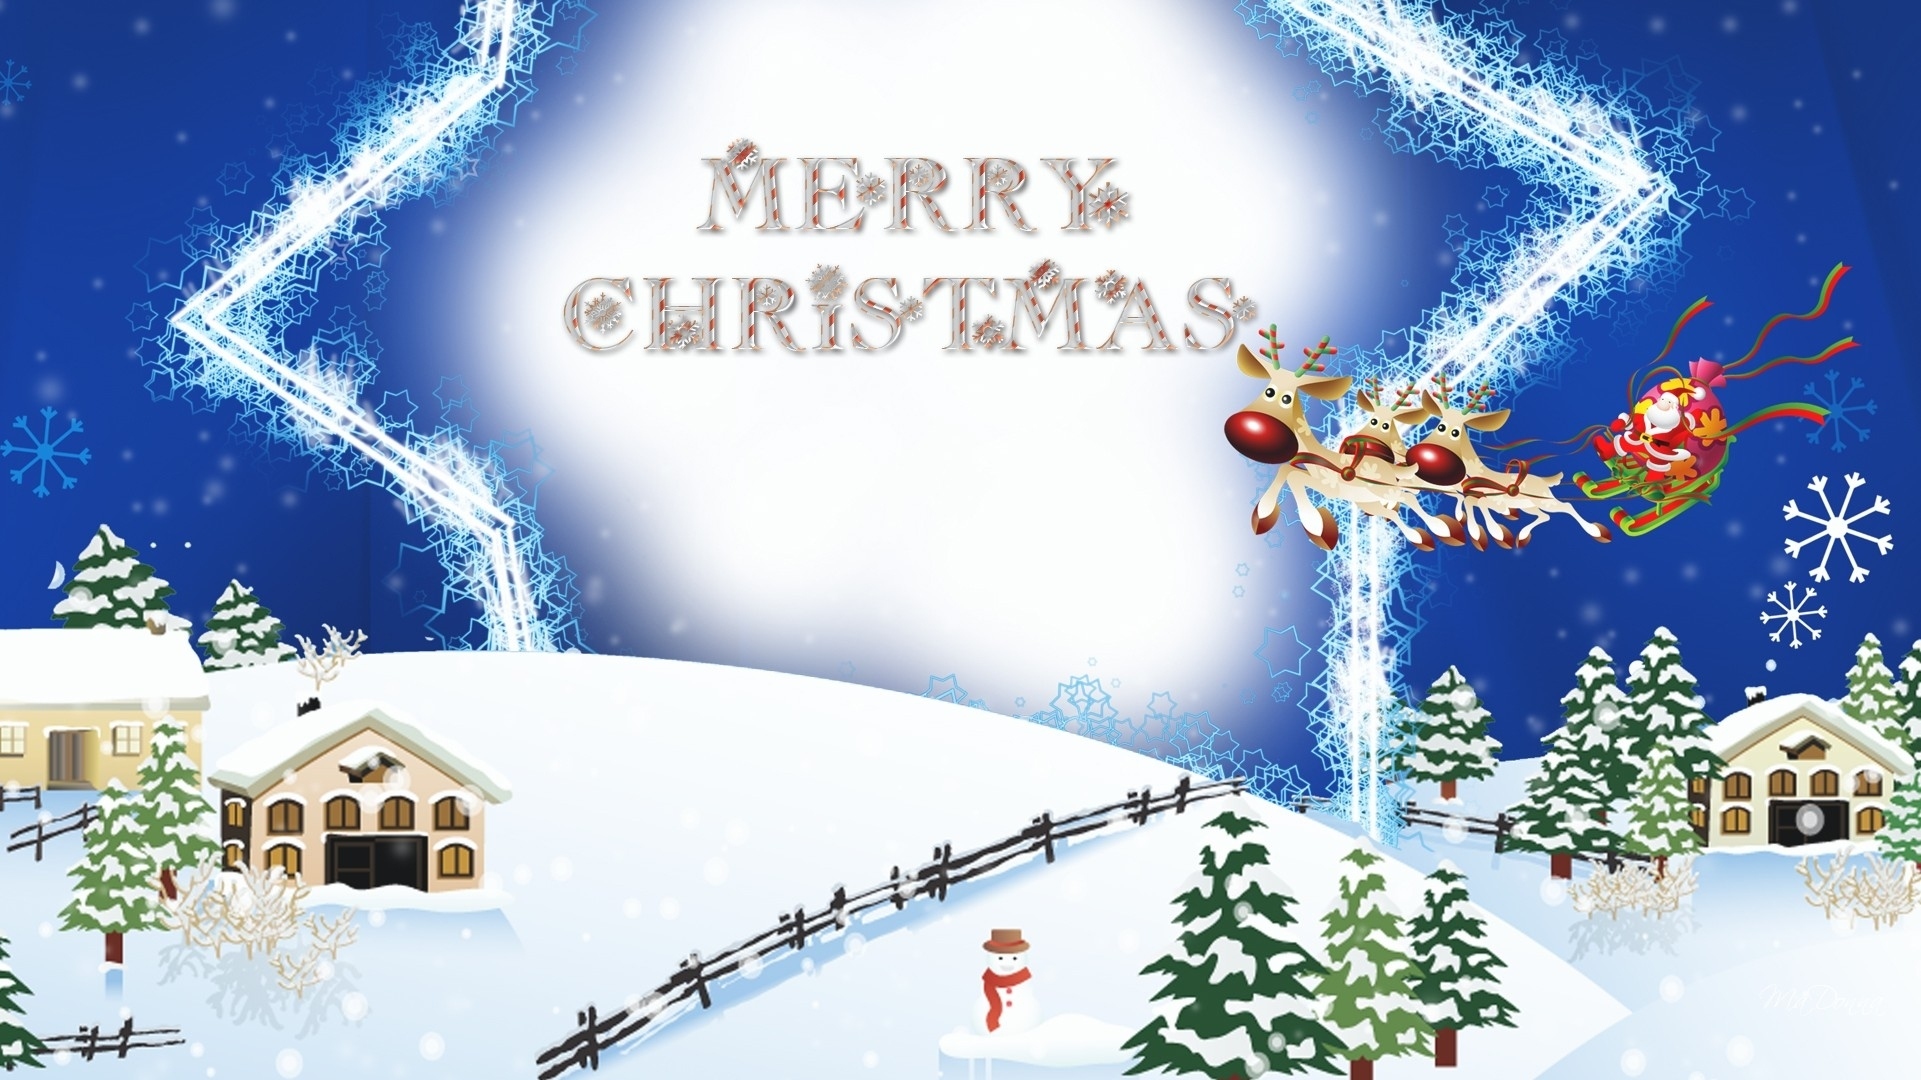 holiday, christmas, house, merry christmas, reindeer, santa claus, sleigh, snow, snowman